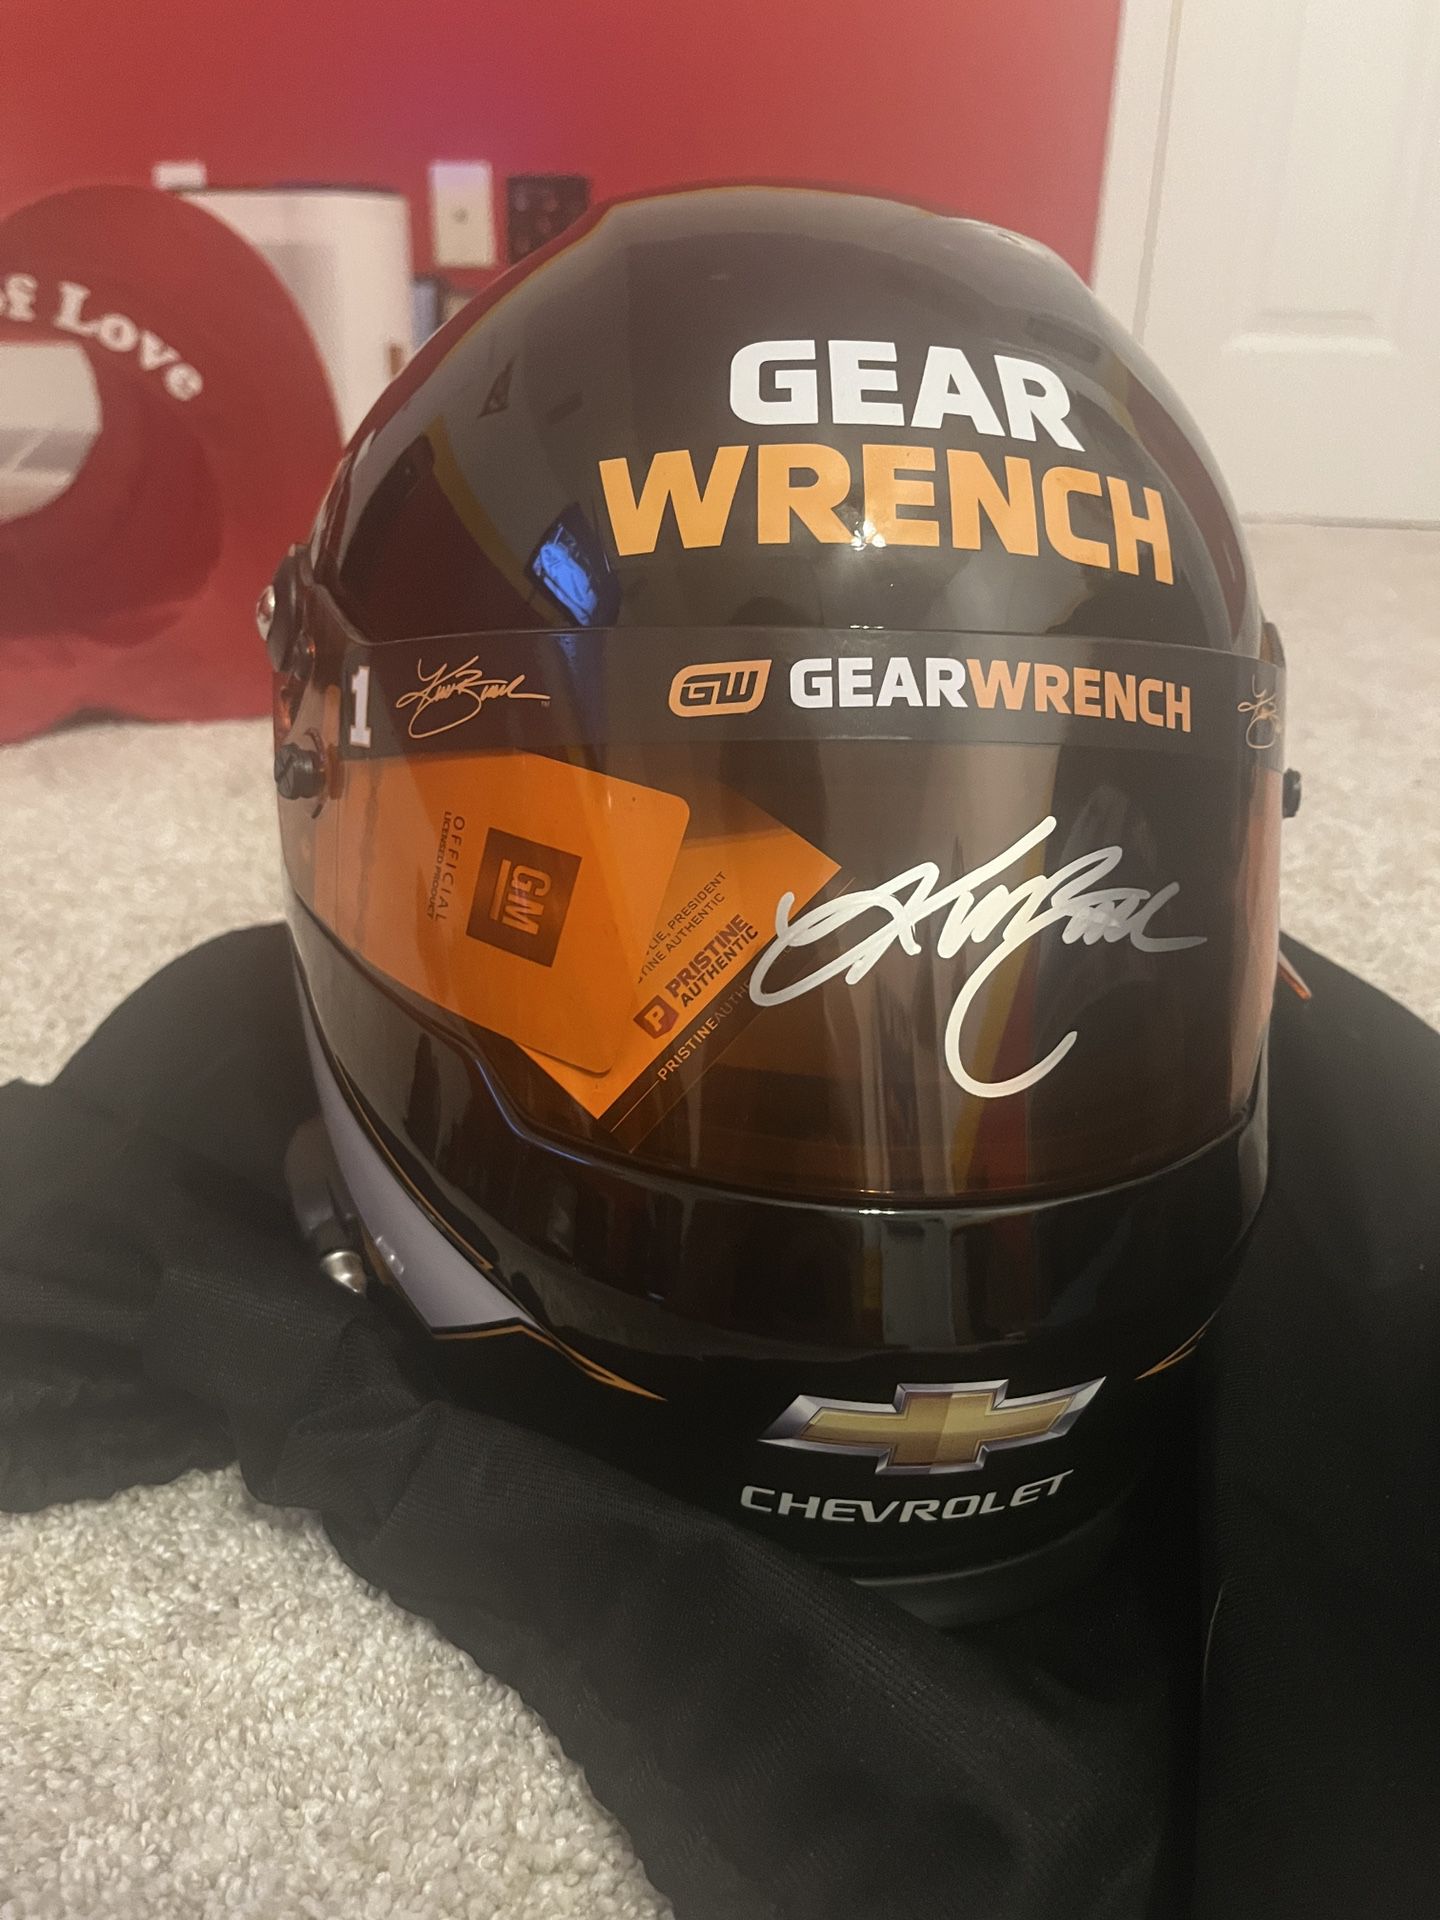 Kurt Busch Signed Racing Helmet